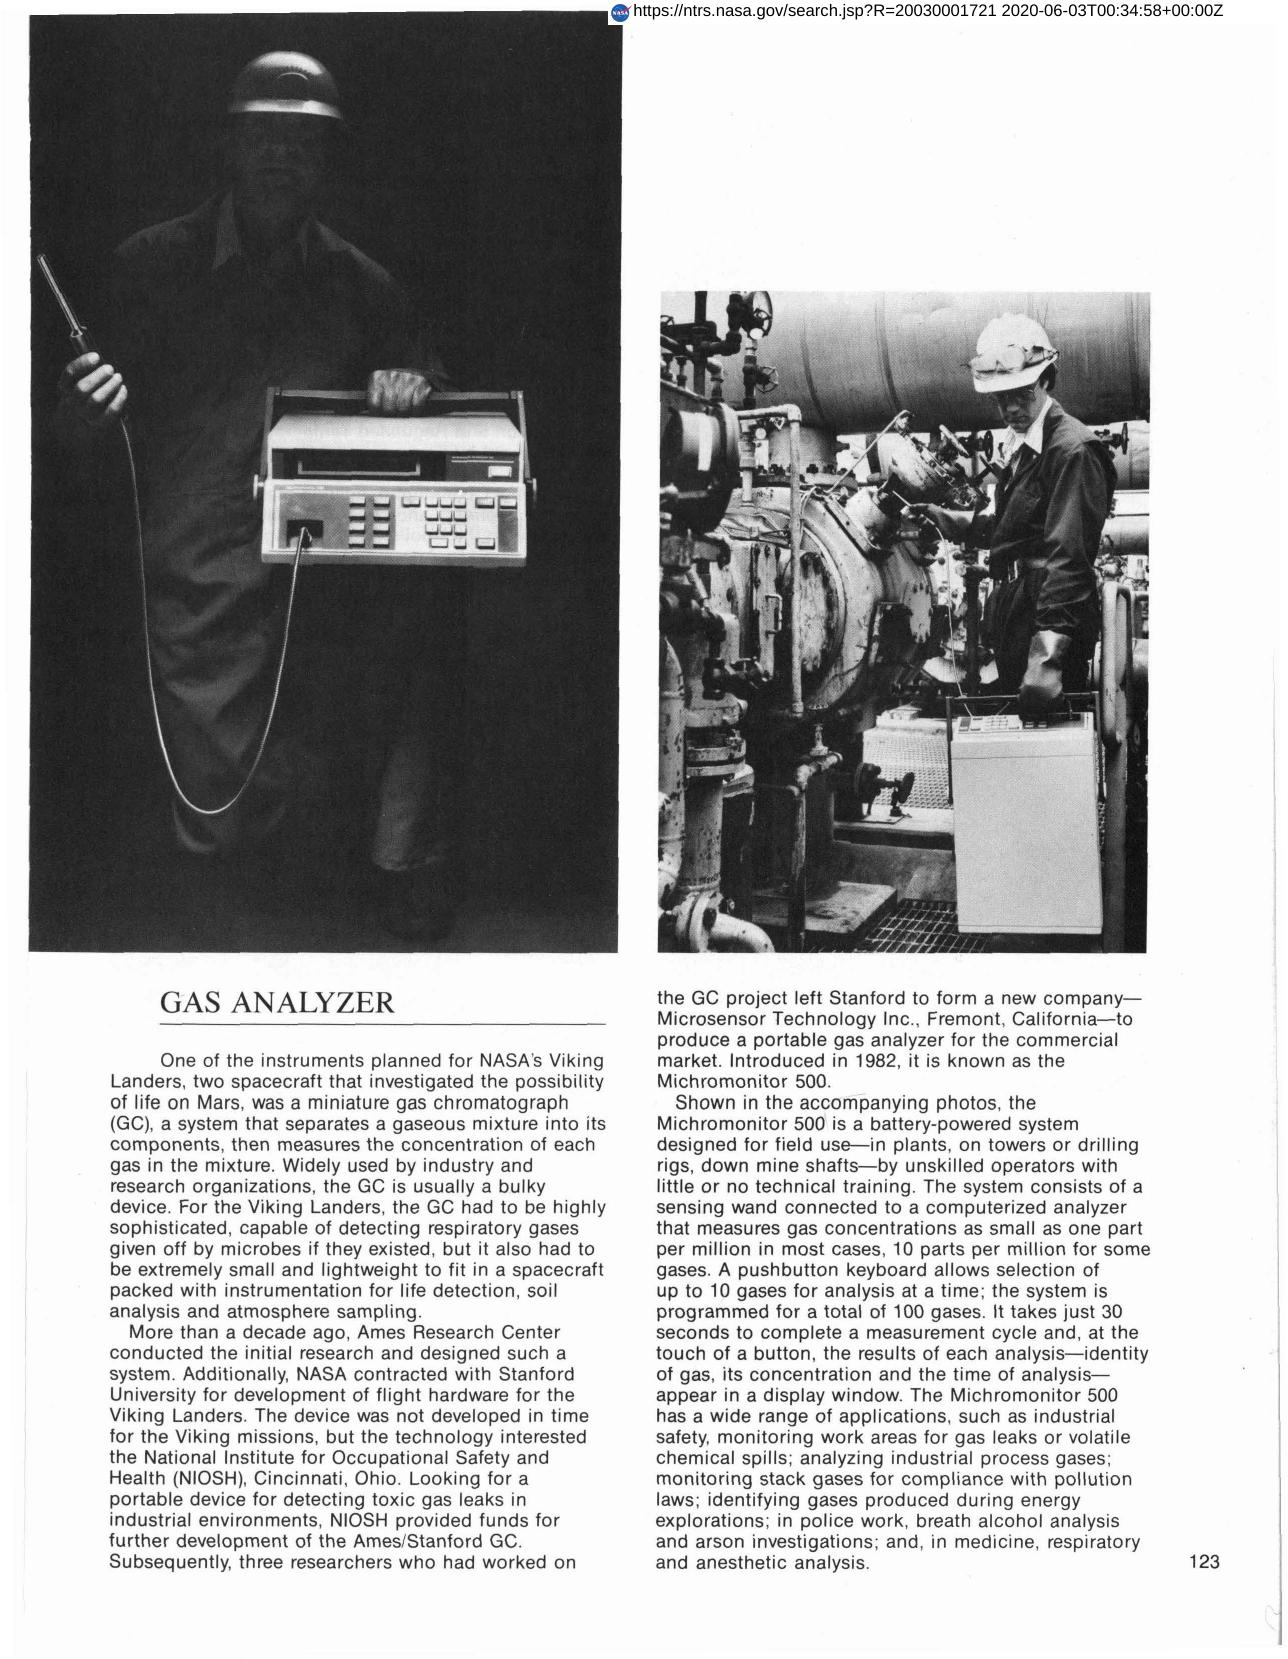 Gas Analyzer (1983)